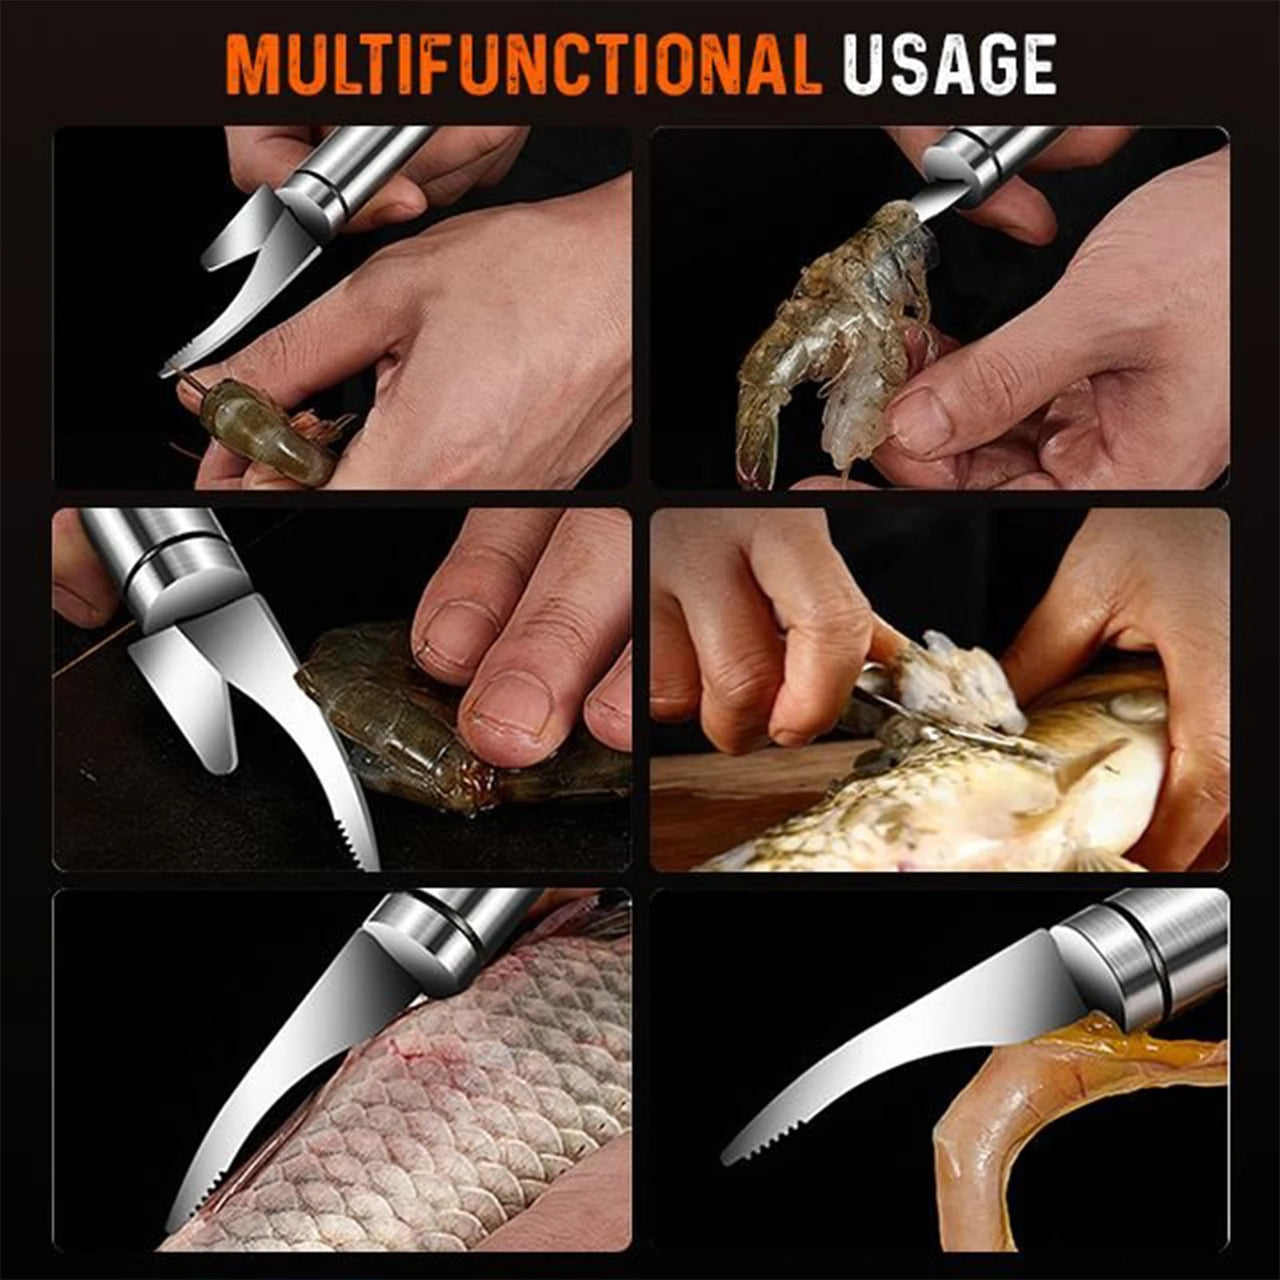 5 in 1 Shrimp & Fish Knife